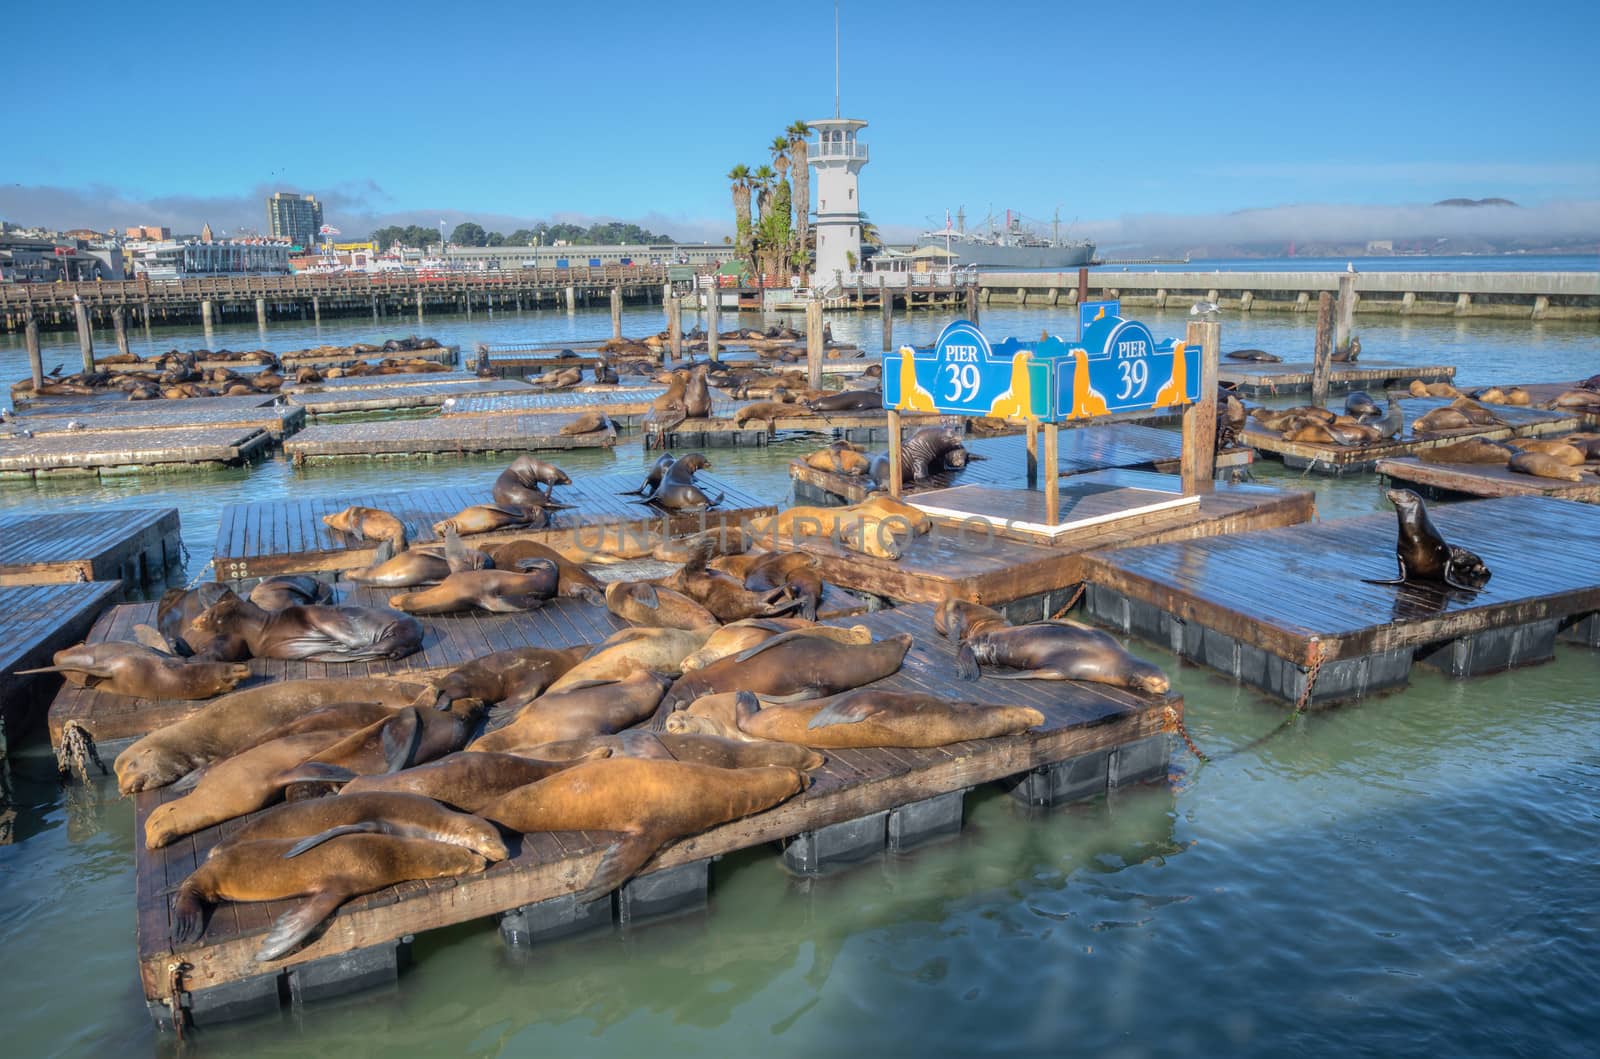 fishermans Sea lions at Pier 39, San Francisco, USA california